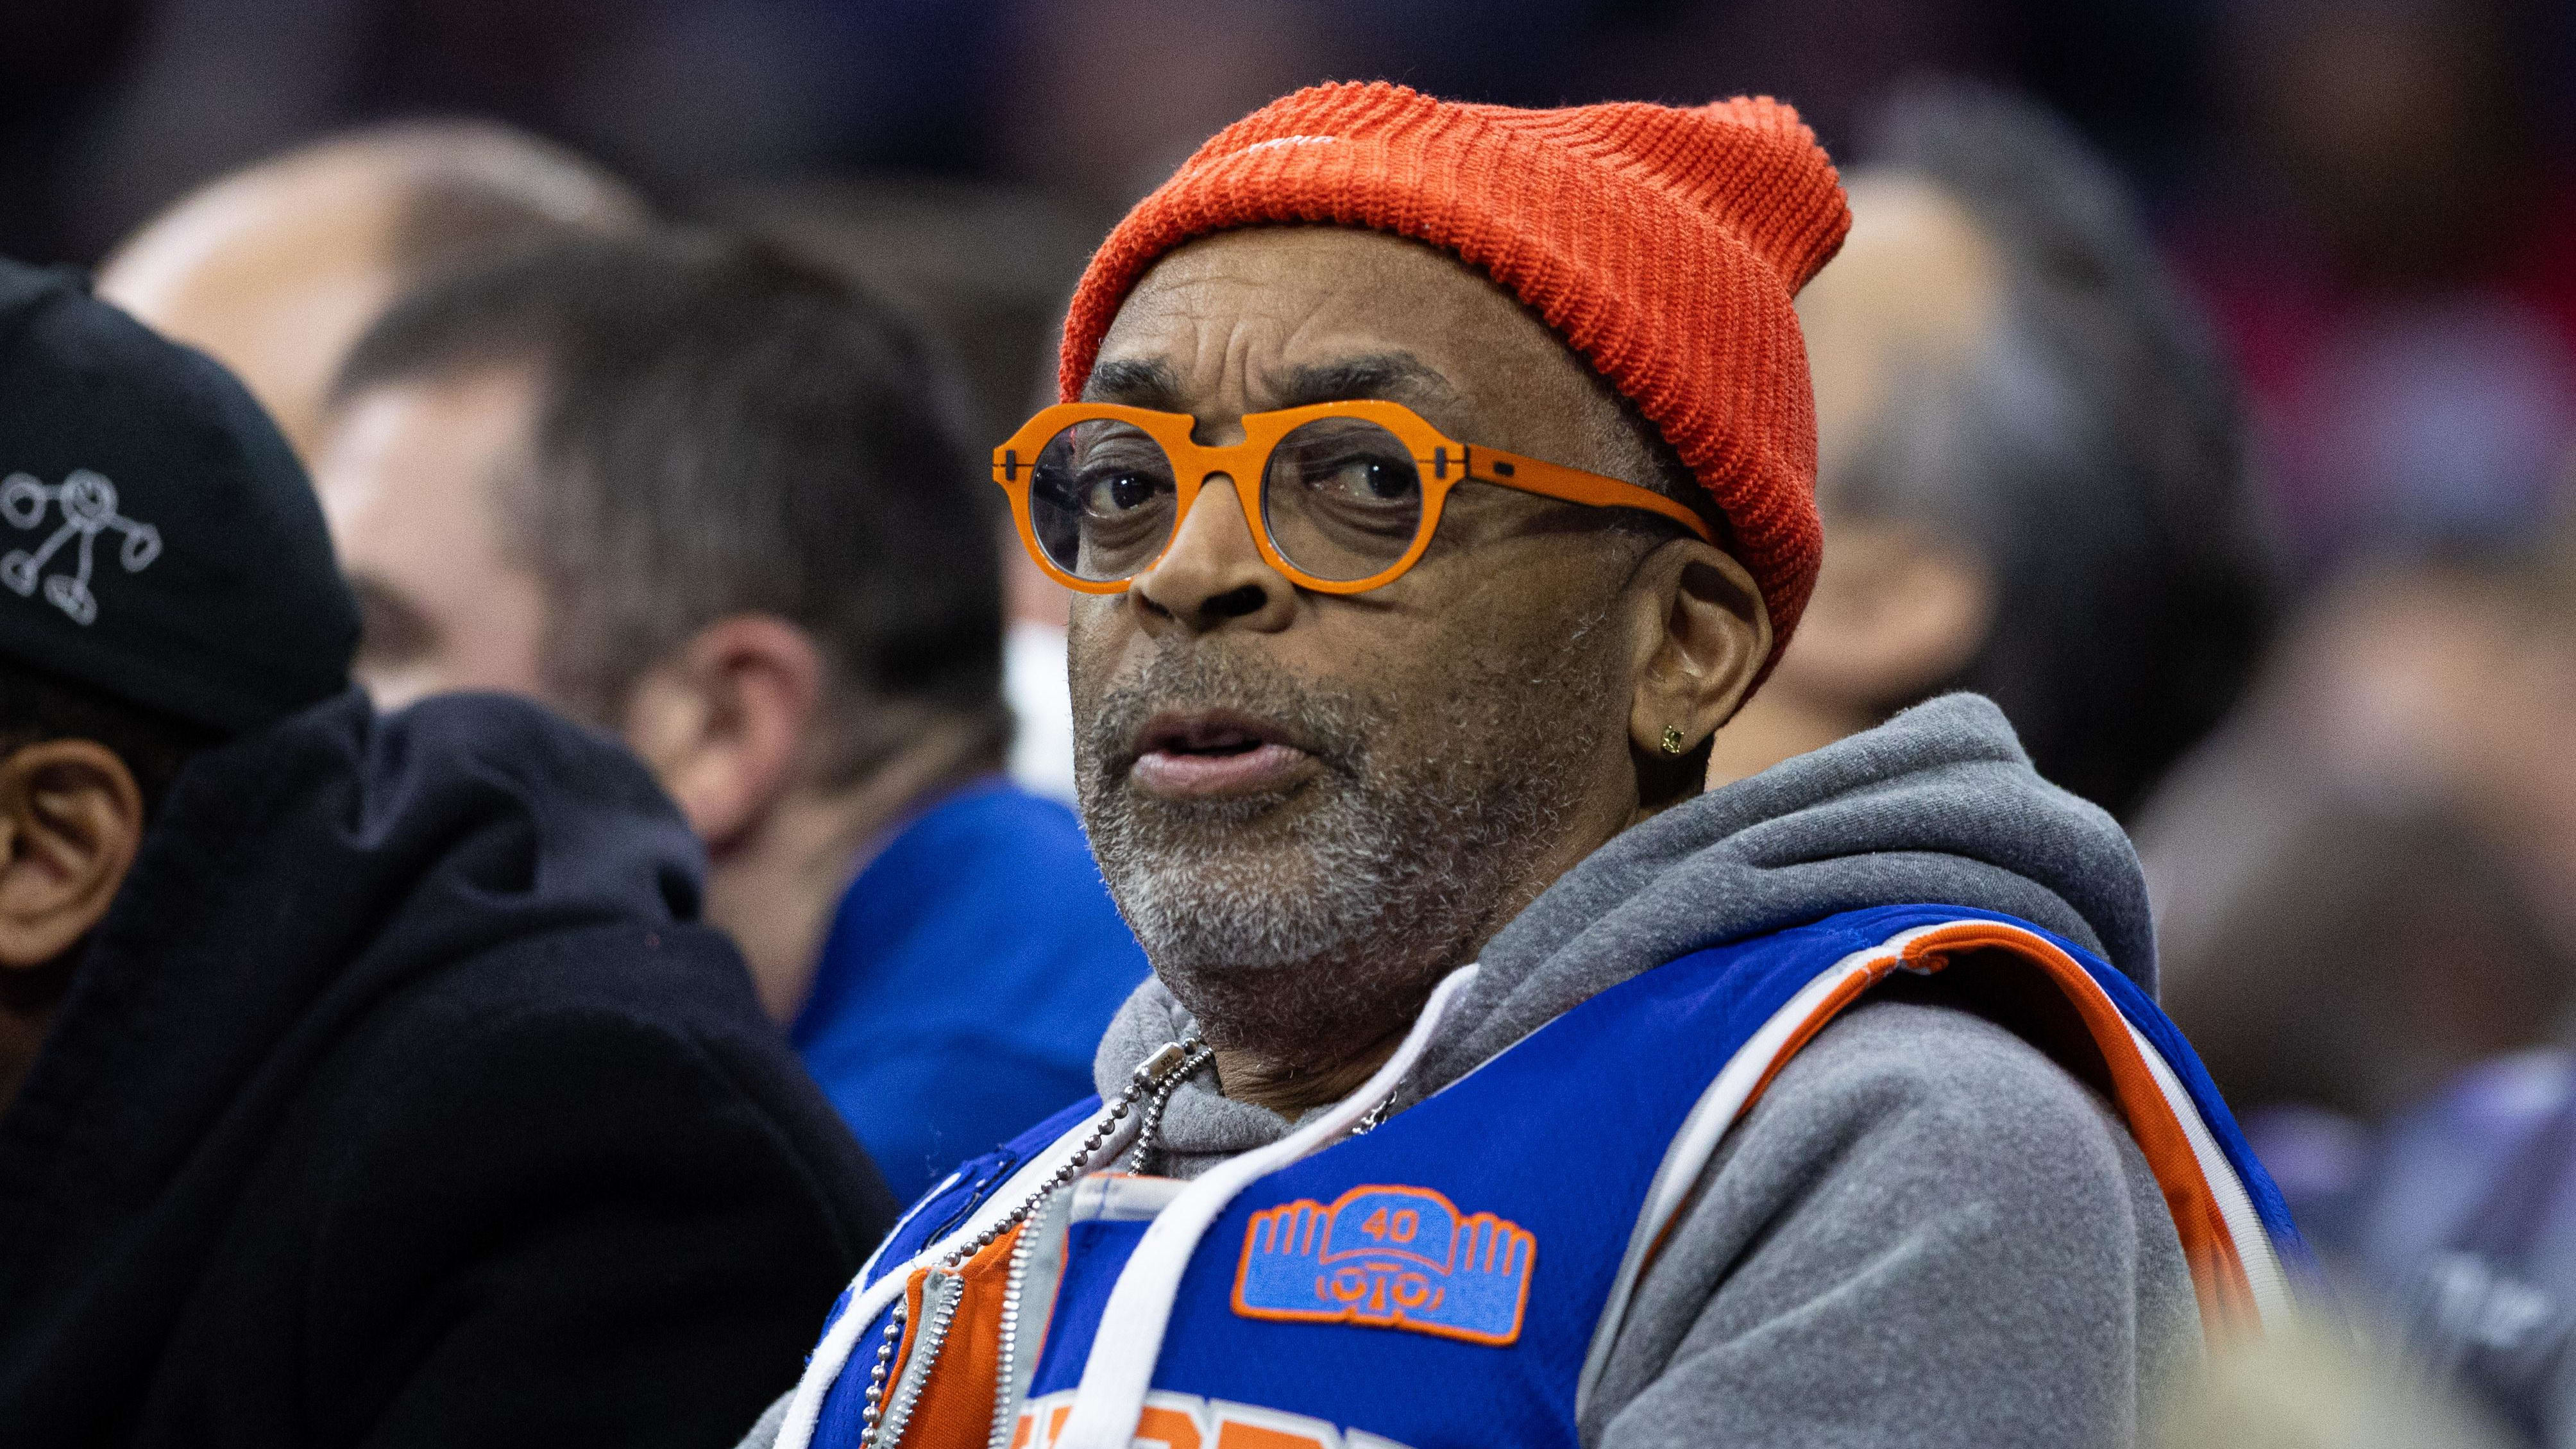 Spike Lee Welcomes Knicks vs Pacers, Reggie Miller